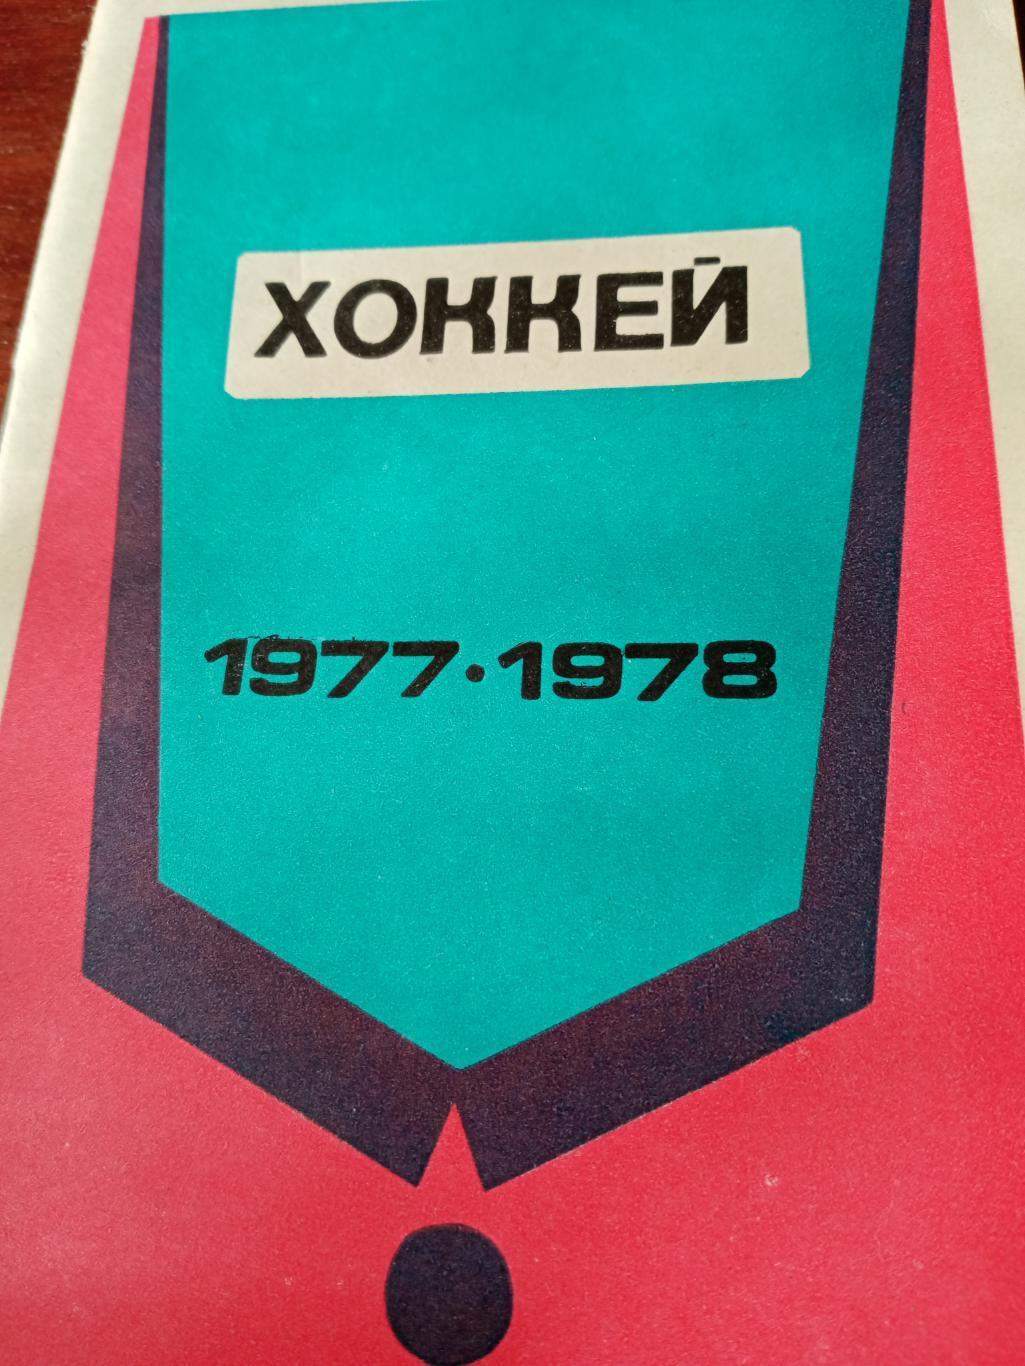 Хоккей. Минск - 1977/78